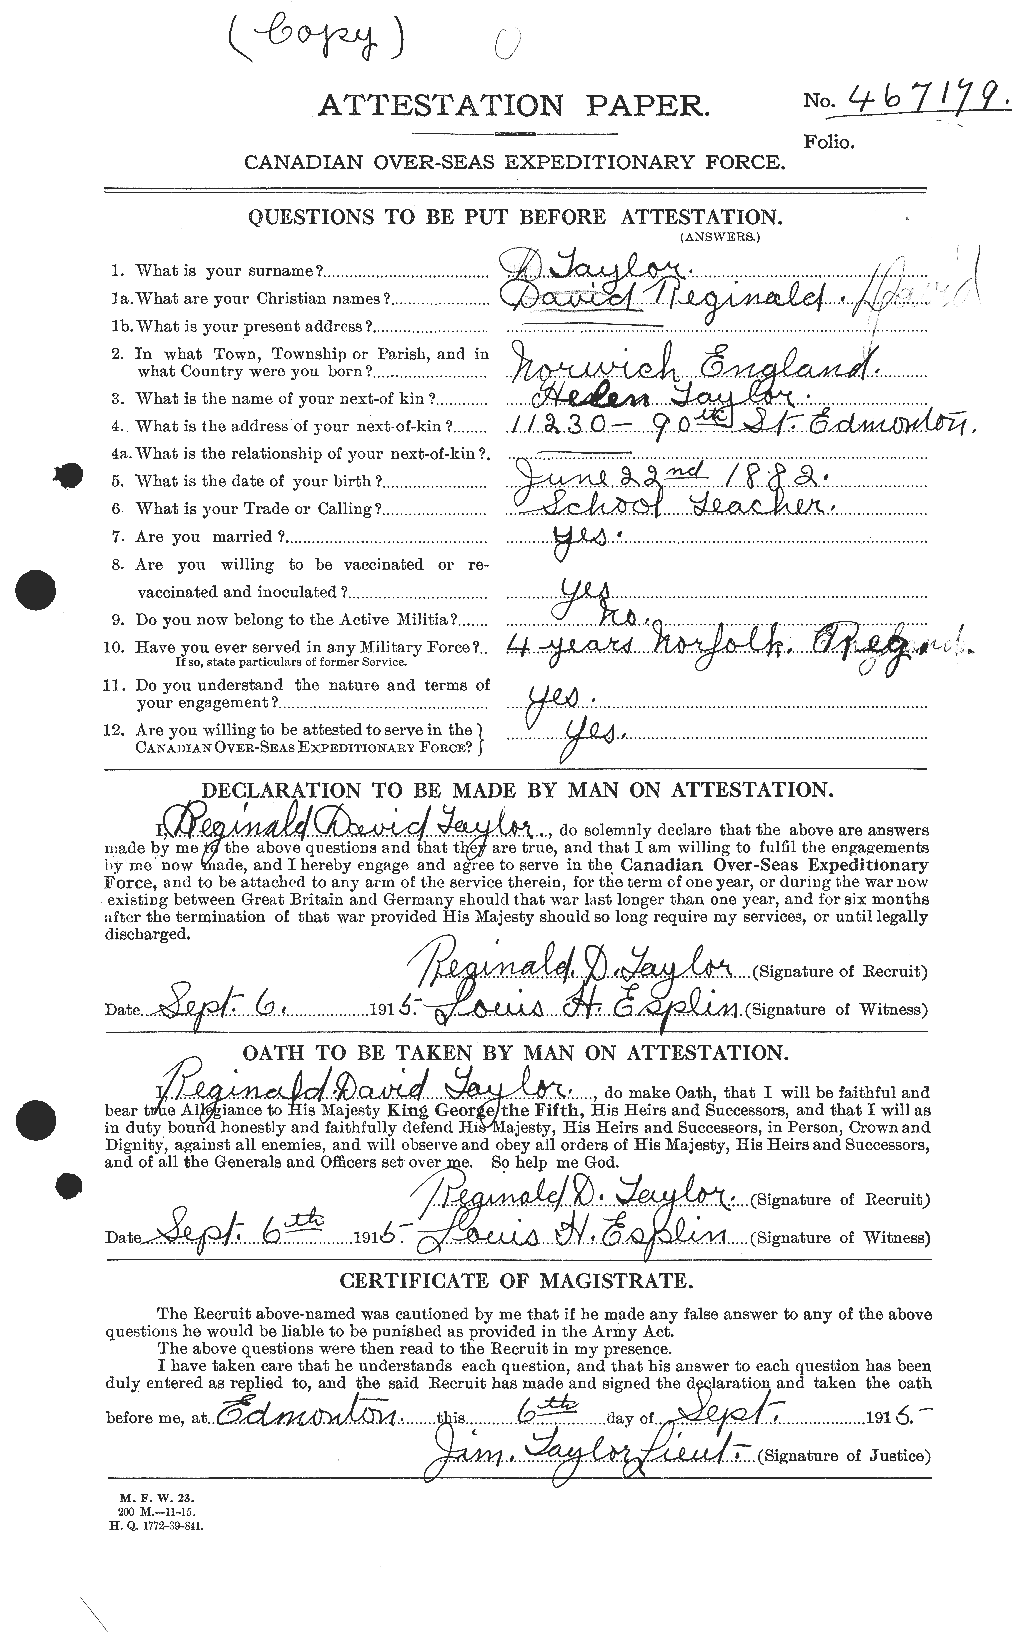 Dossiers du Personnel de la Première Guerre mondiale - CEC 627803a